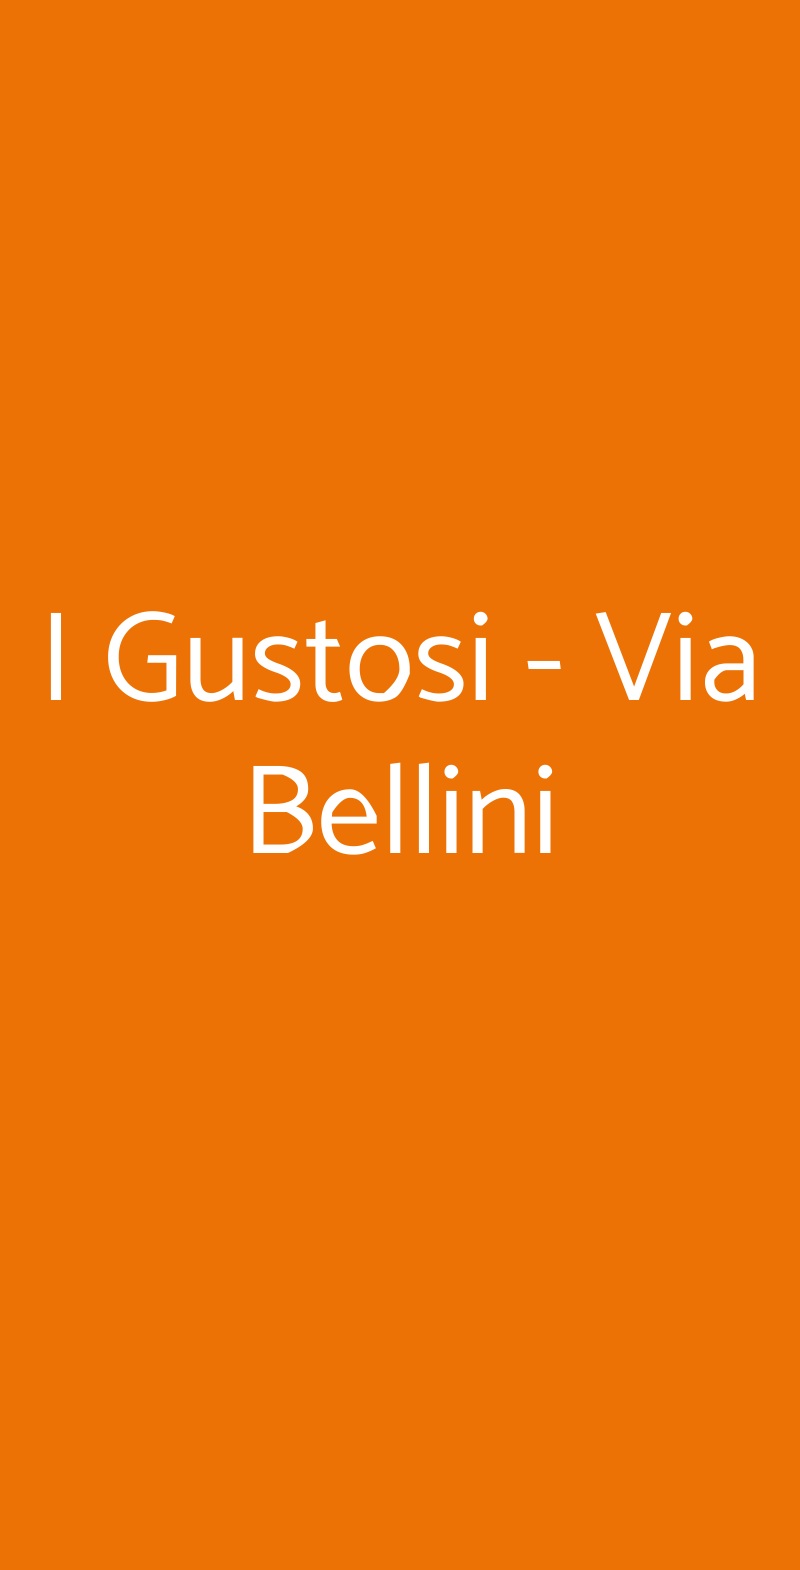 I Gustosi - Via Bellini Milano menù 1 pagina